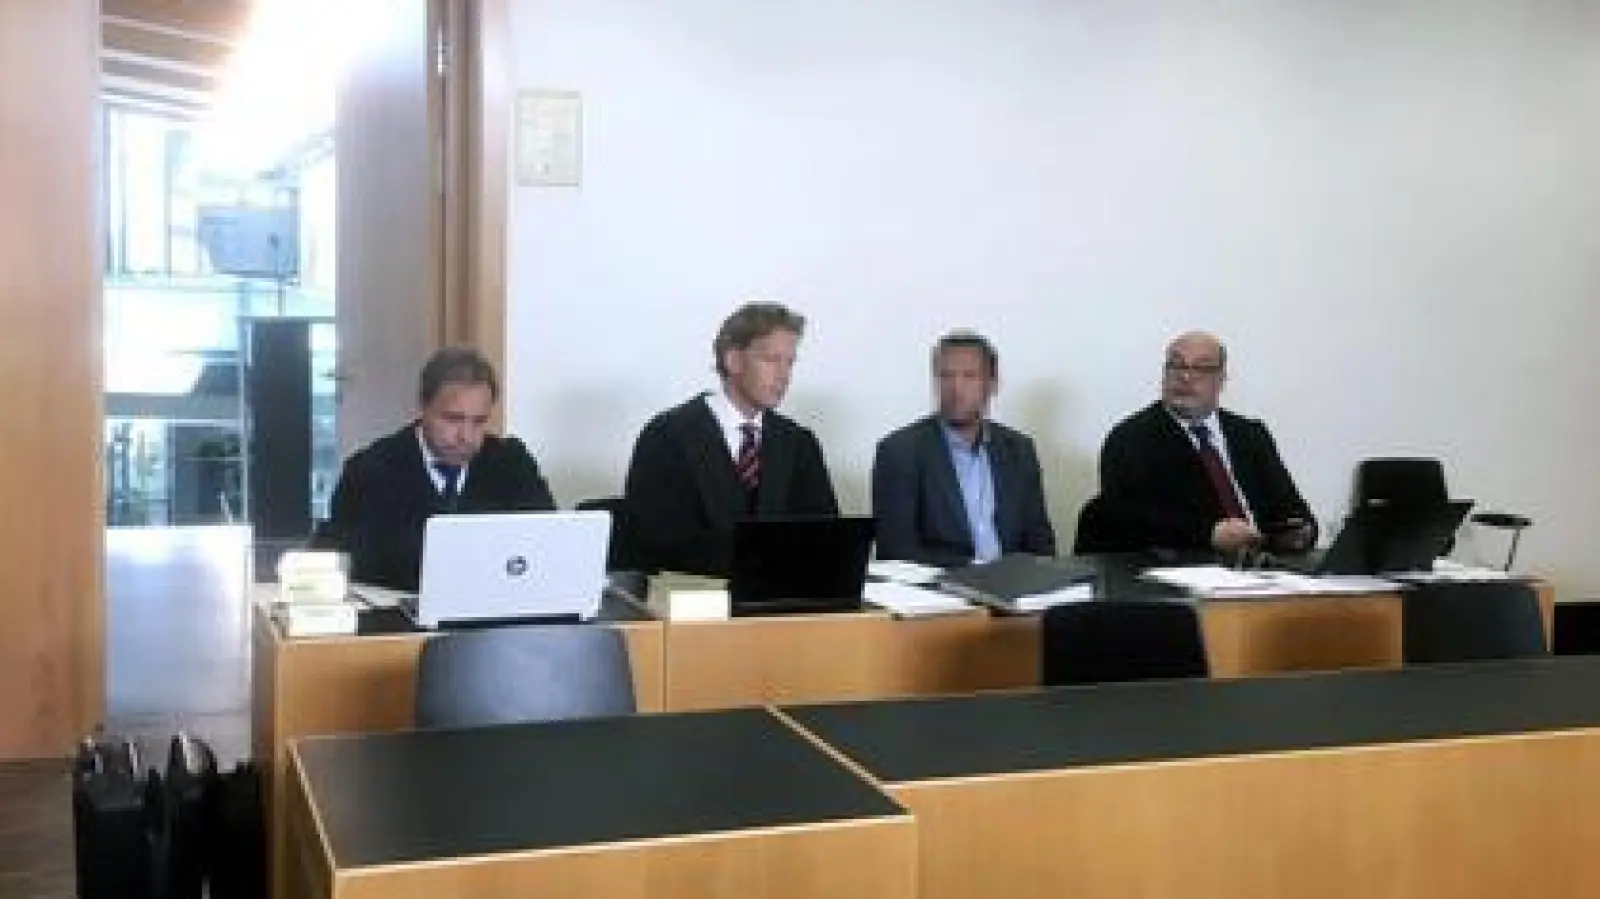 Der Angeklagte   (Zweiter von rechts) wird von drei Rechtsanwälten vertreten: Alexander Eckstein, Thorsten Ebermann und Richard Beyer verteidigen den 38-Jährigen. 	Foto: Monika Grunert Glas (Foto: Monika Grunert Glas)